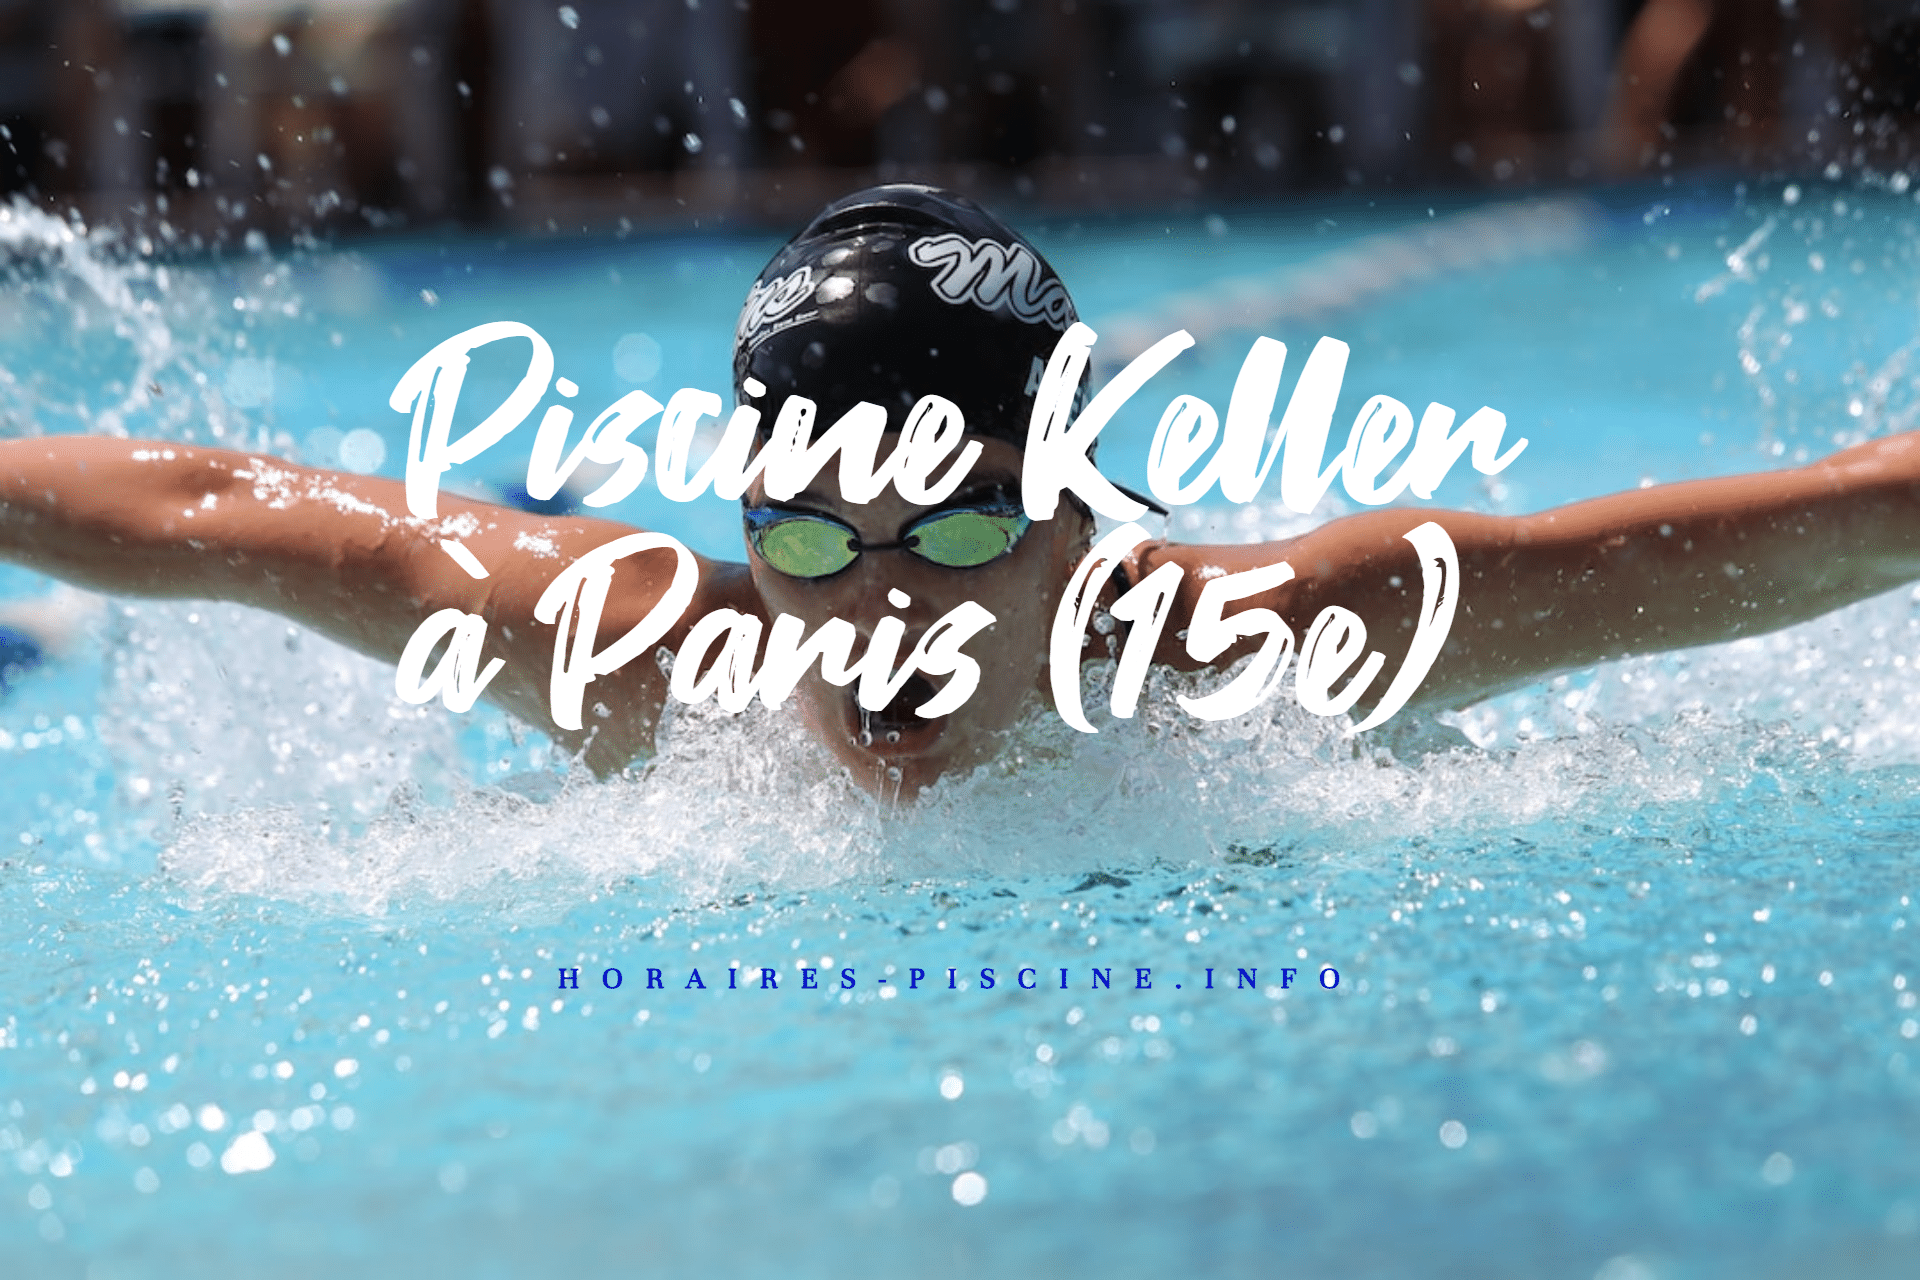 horaires Piscine Keller à Paris (15e)